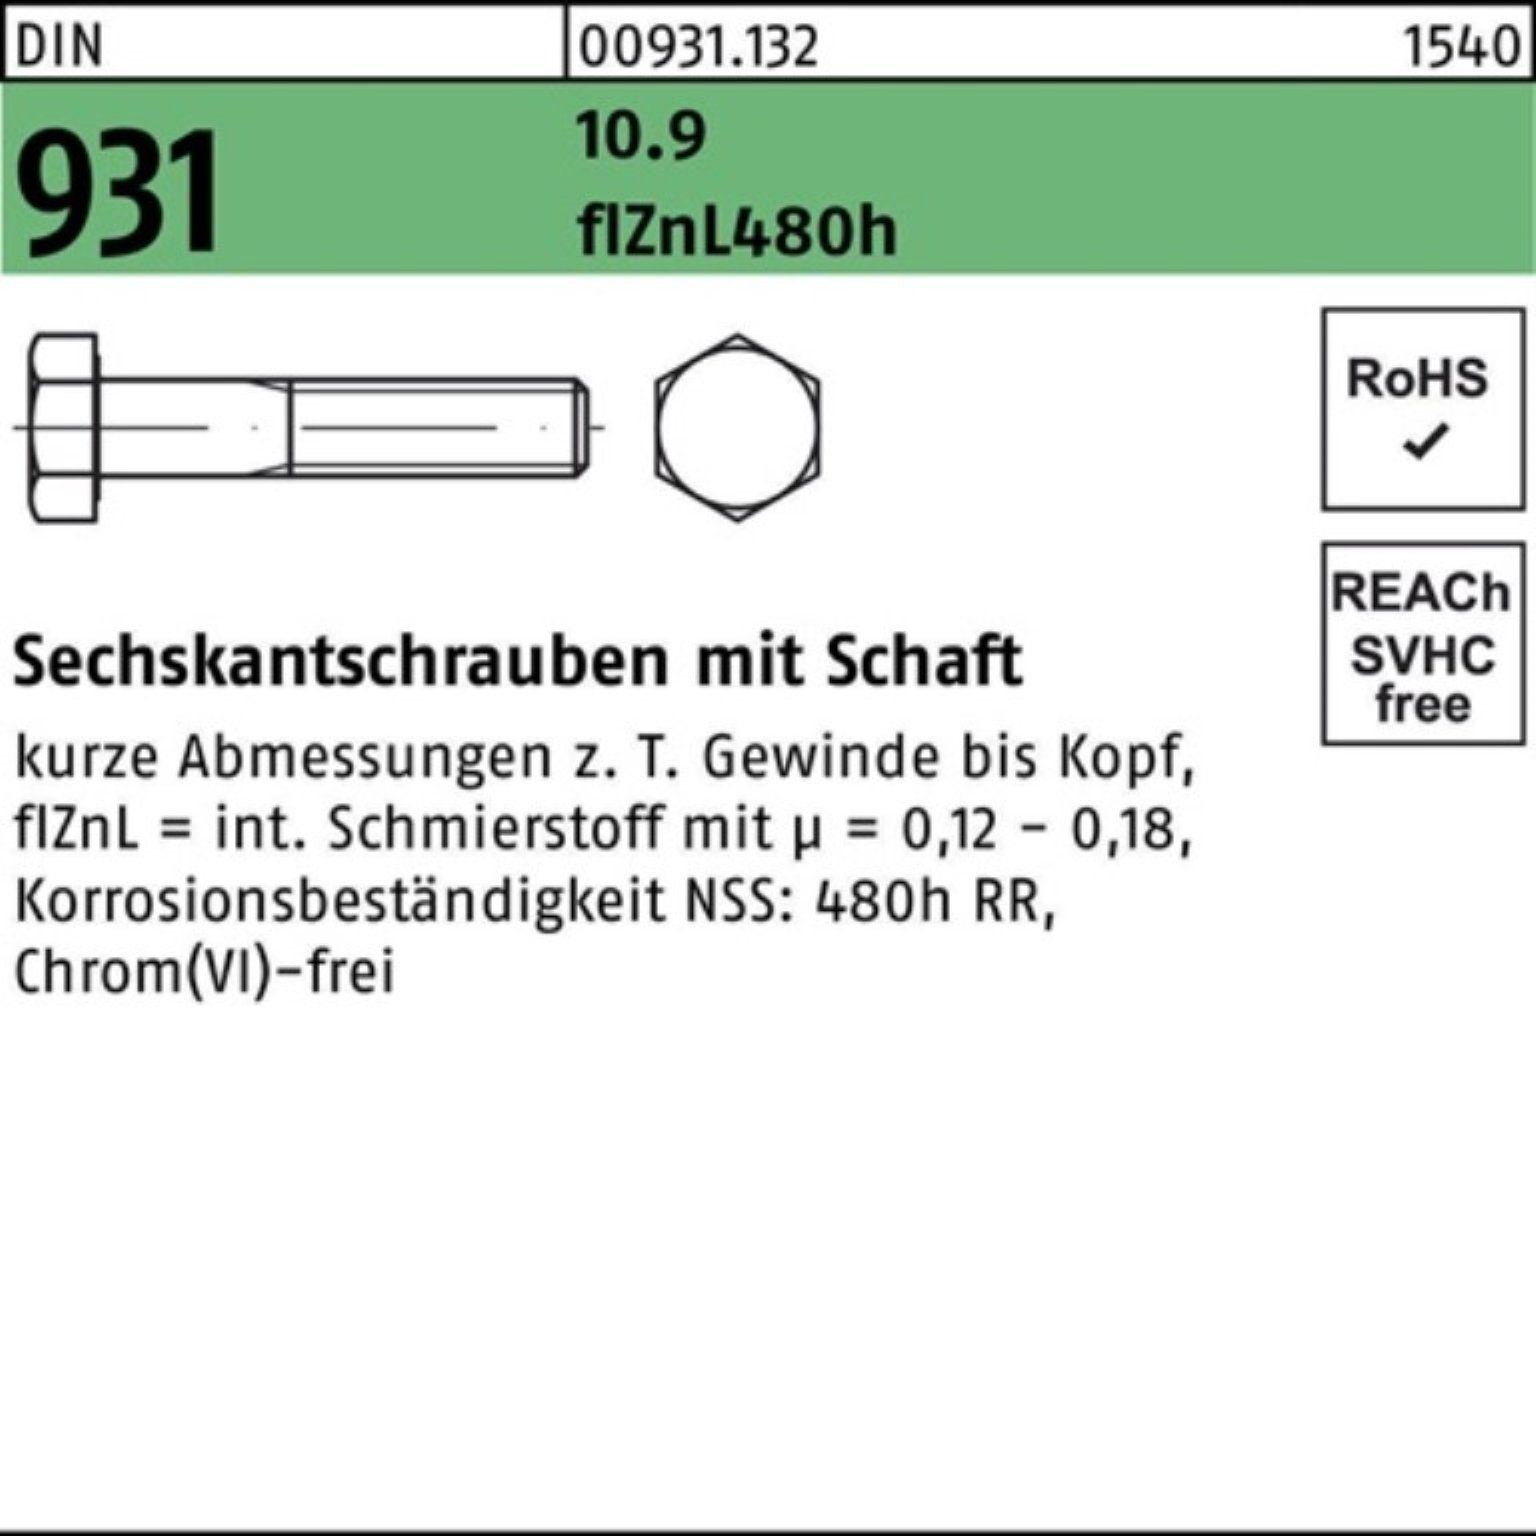 Schaft Pack 150 flZnL/nc/x/x DIN Reyher Sechskantschraube 100er 931 Sechskantschraube 10.9 M24x